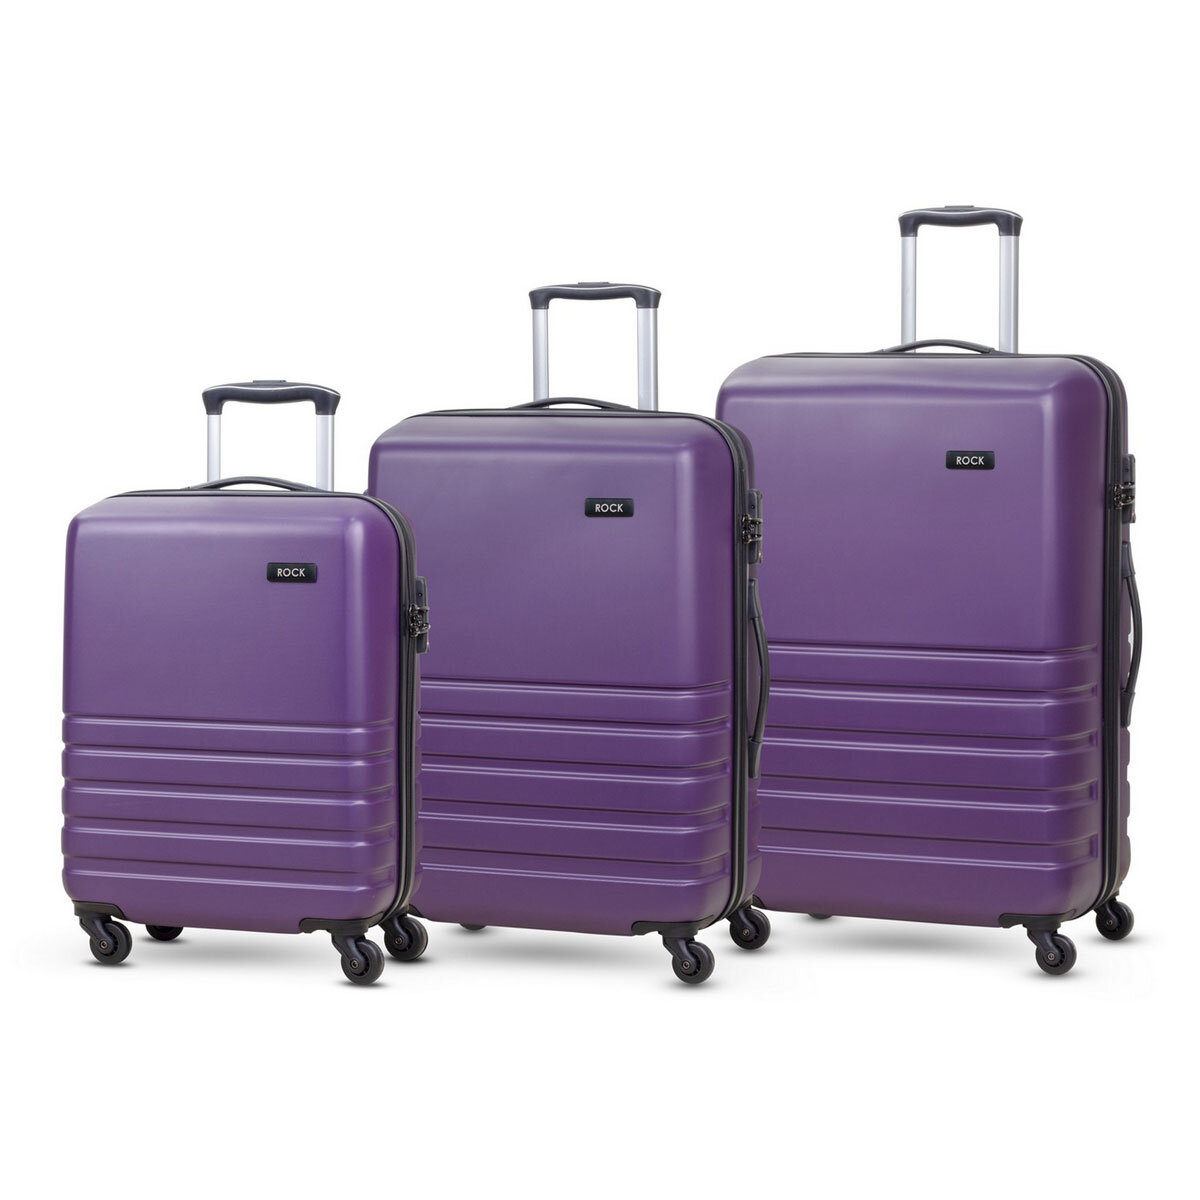 Rock Byron 3 Piece Hardside Luggage Set in Purple | Costc...